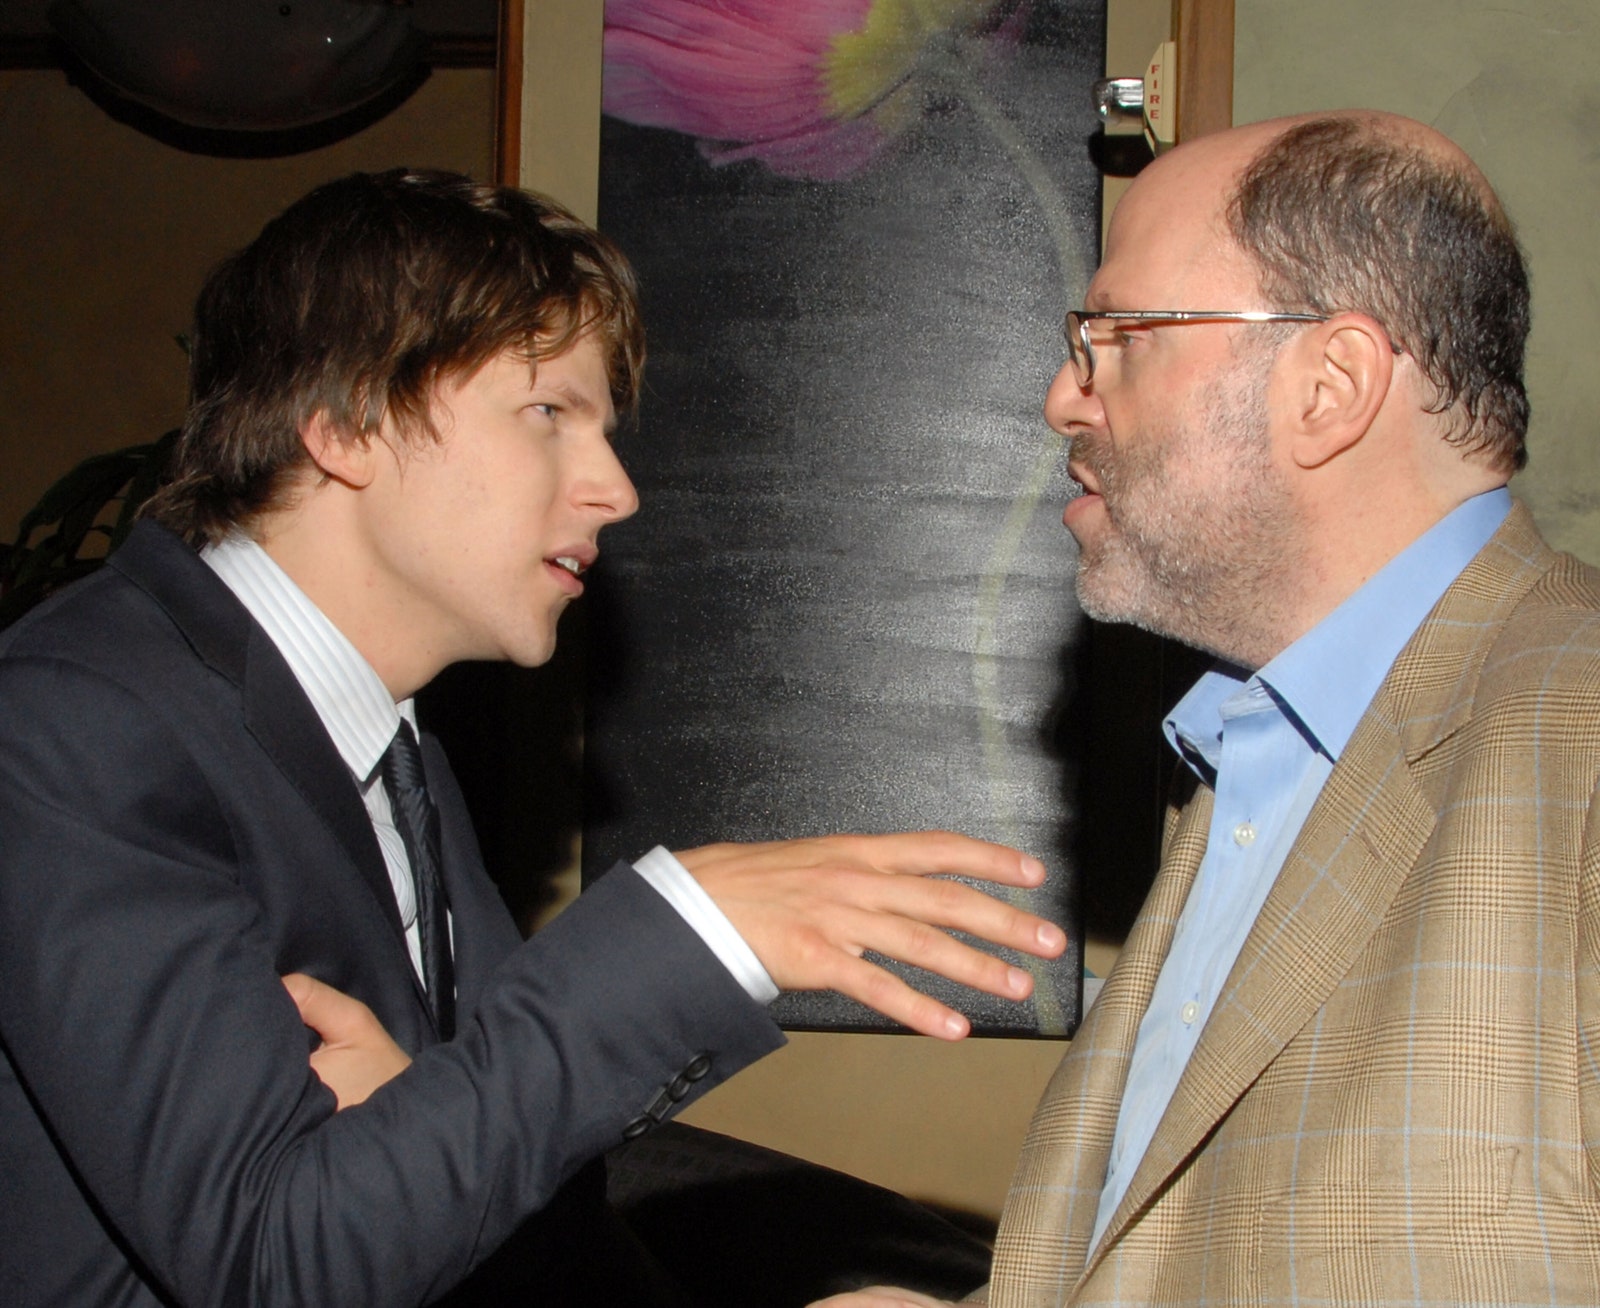 Джейзи Айзенберг и Скотт Руди на мероприятии в честь DVDрелиза фильма «Социальная сеть» в Калифорнии 2011 год.